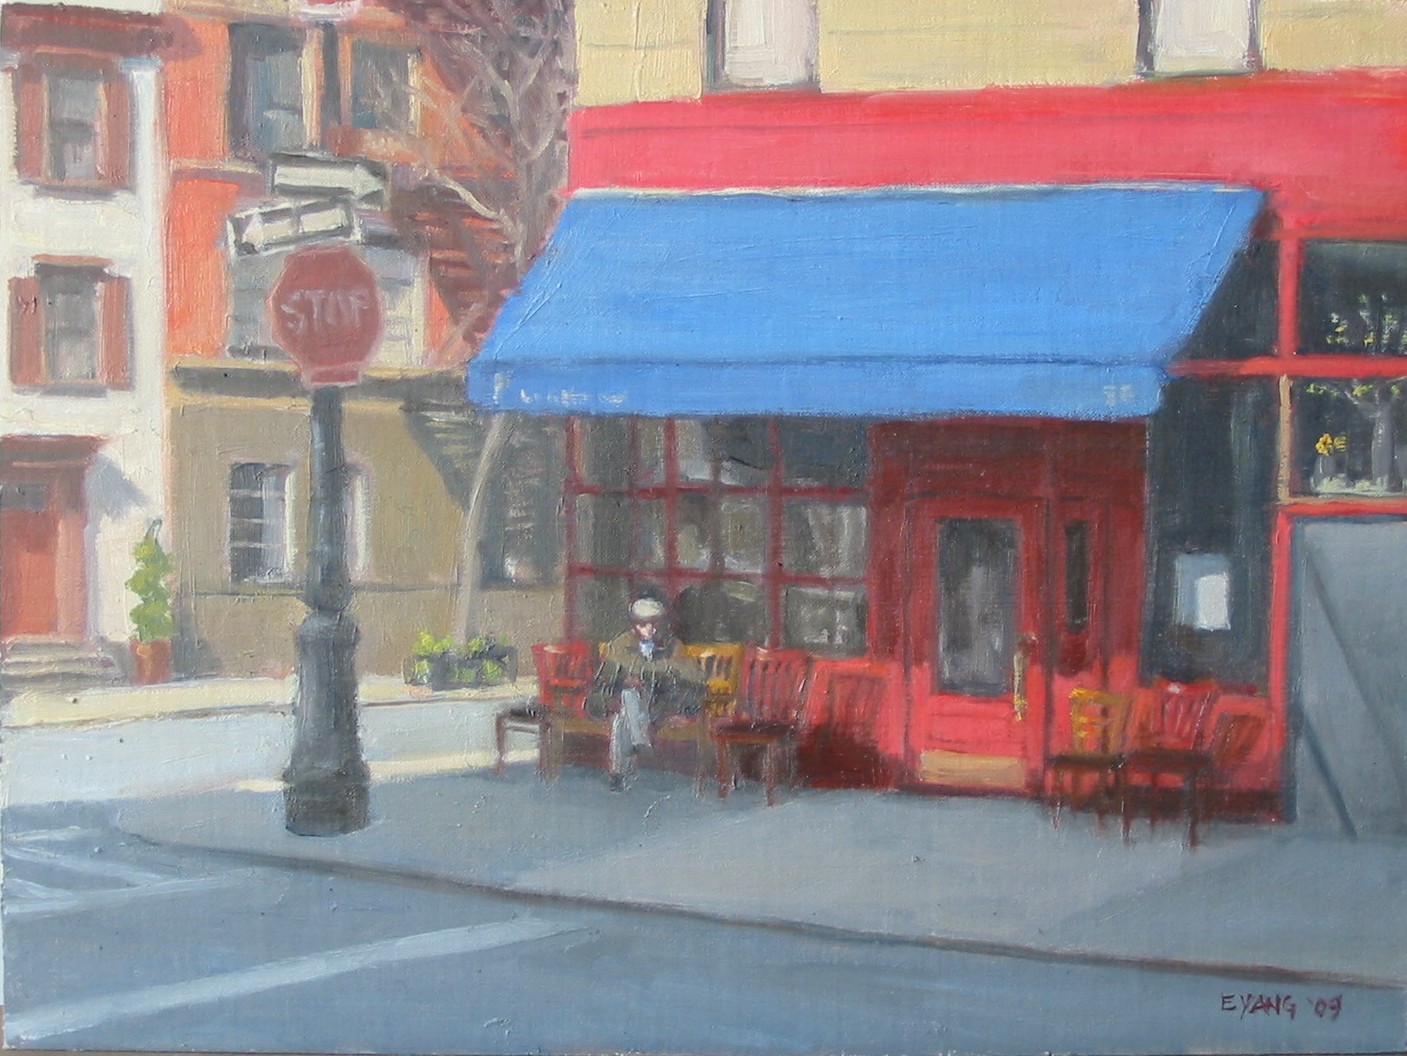 Little Owl Cafe, Greenwich Village, oil on panel, 9 x 12 in.